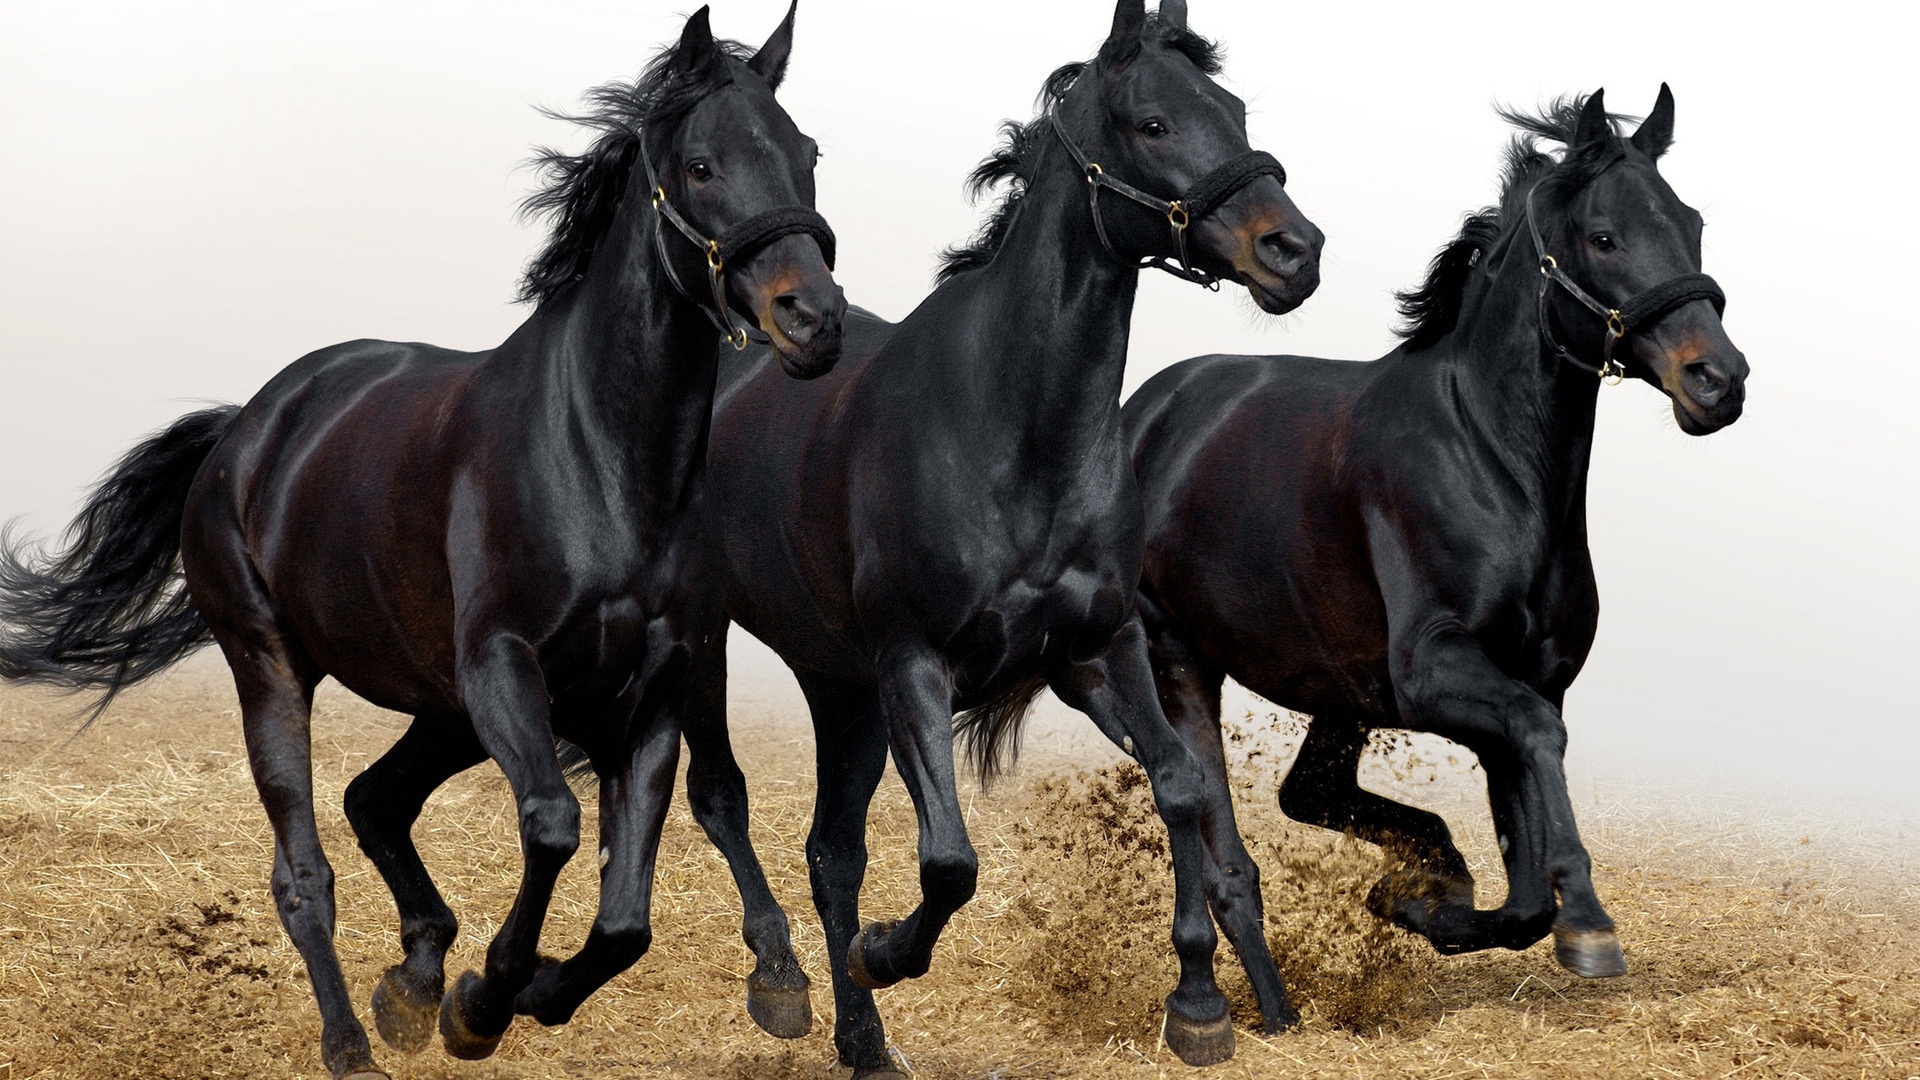 Wallpaper Three Black Horses - 7 Black Horse Running - 1920x1080 Wallpaper  